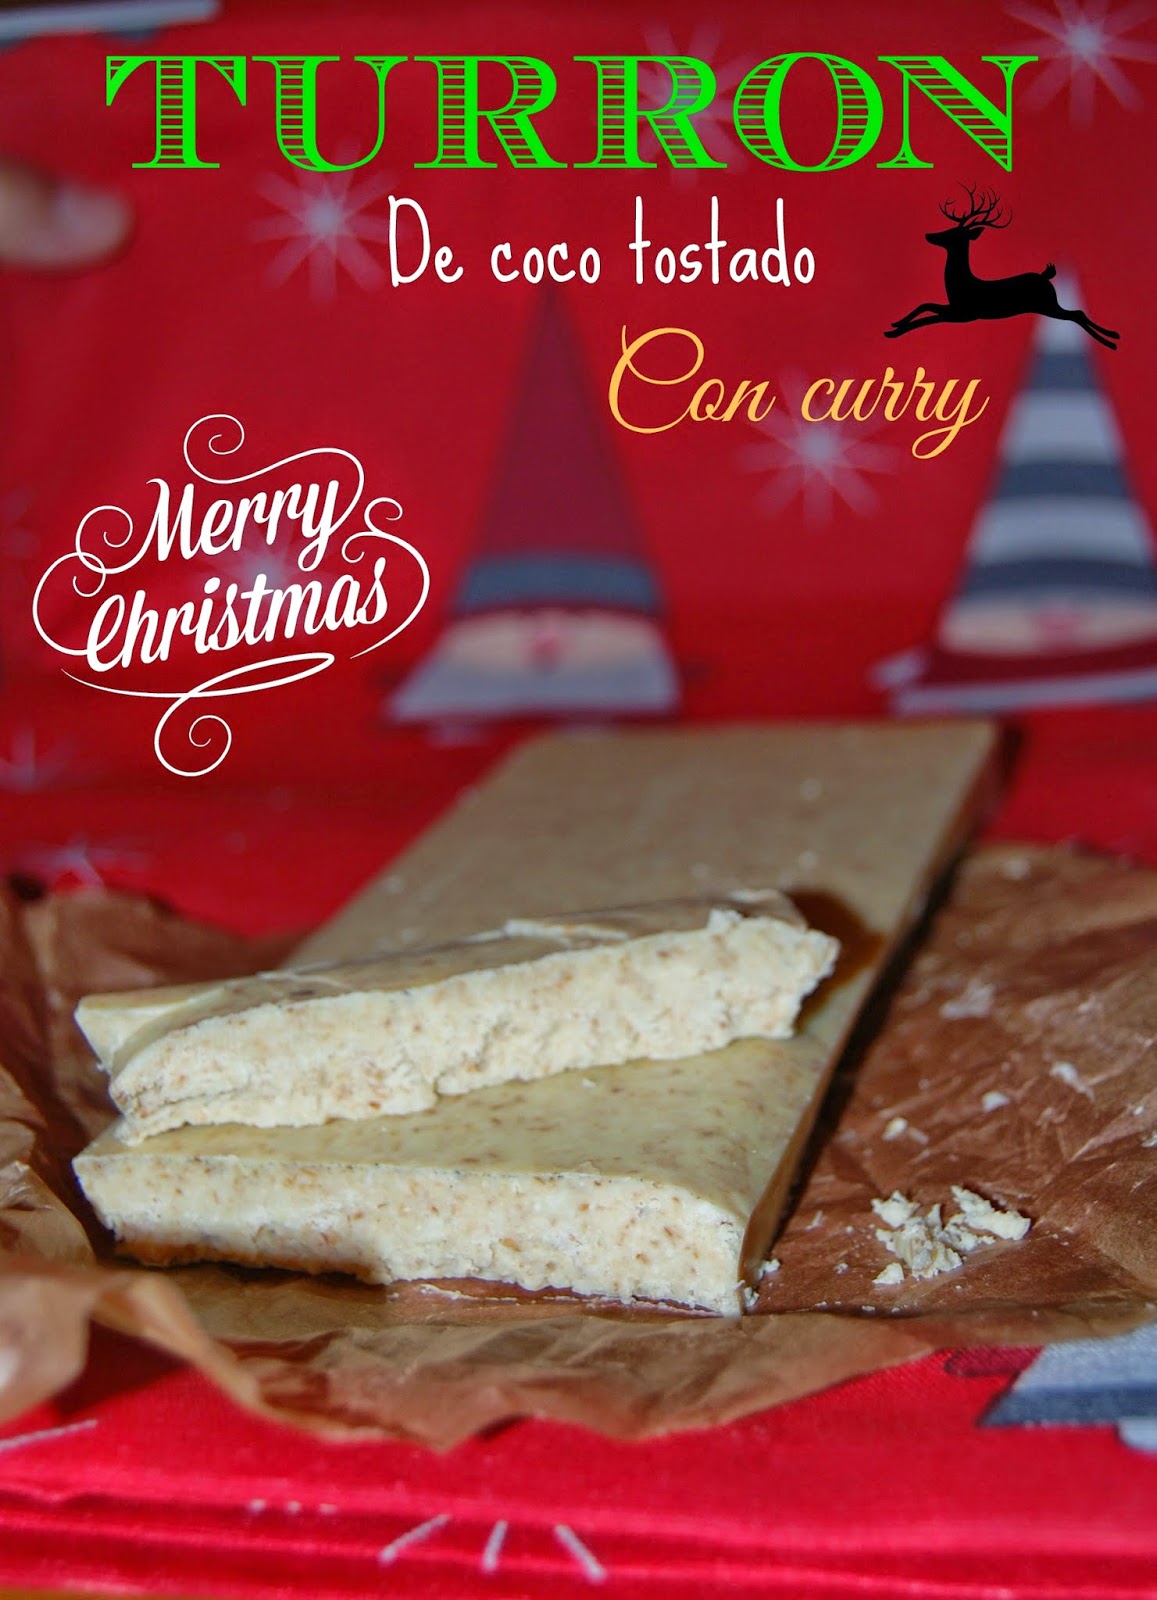 http://azucarenmicocina.blogspot.com.es/2014/12/turron-de-chocolate-blanco-coco-tostado.html